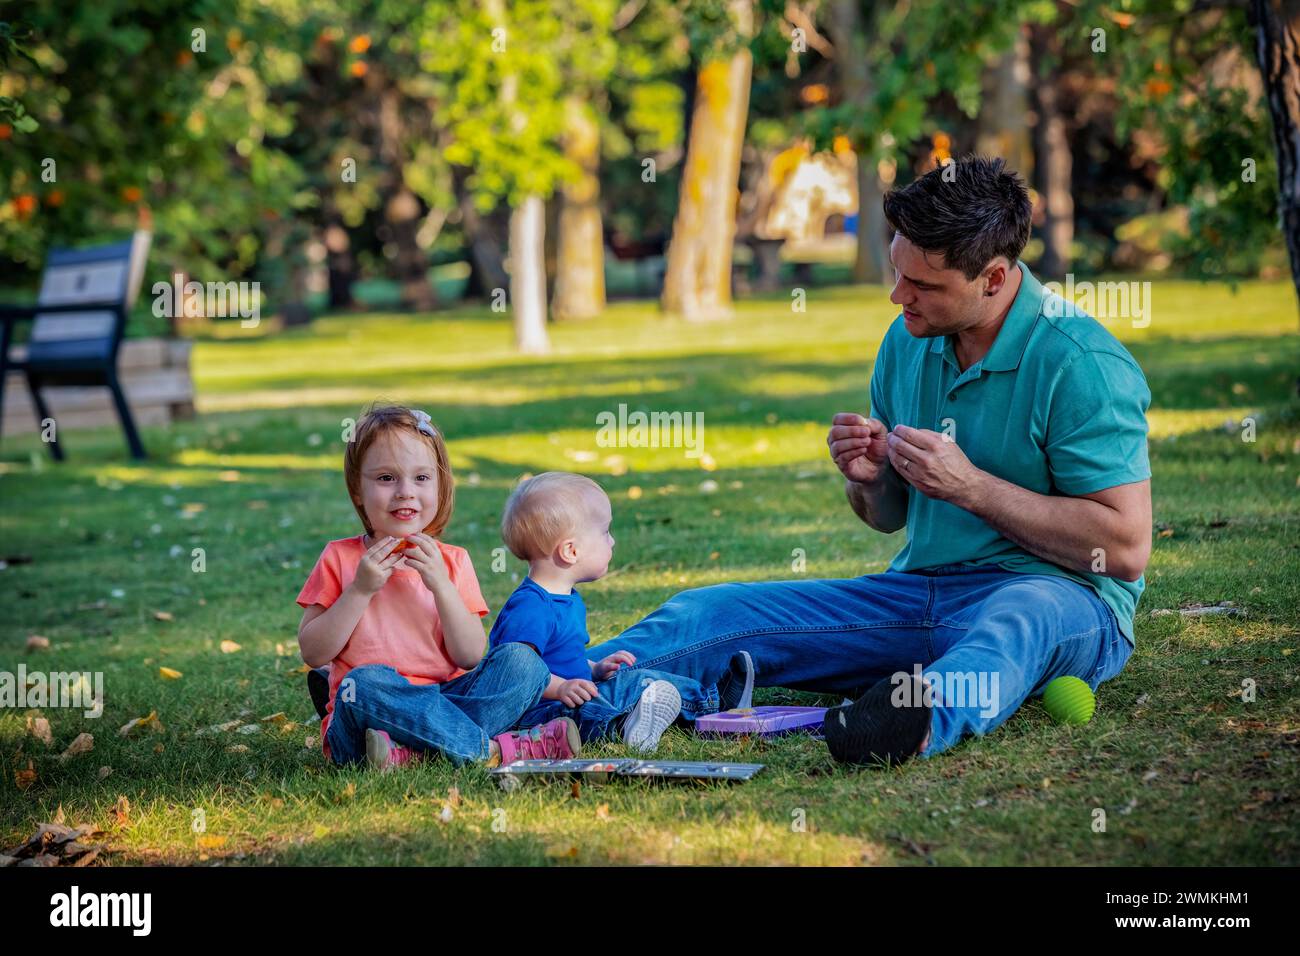 Padre che passa del tempo di qualità e usa il linguaggio dei segni con il suo giovane figlio che ha la sindrome di Down, mentre sua figlia gioca, in un parco cittadino durin... Foto Stock